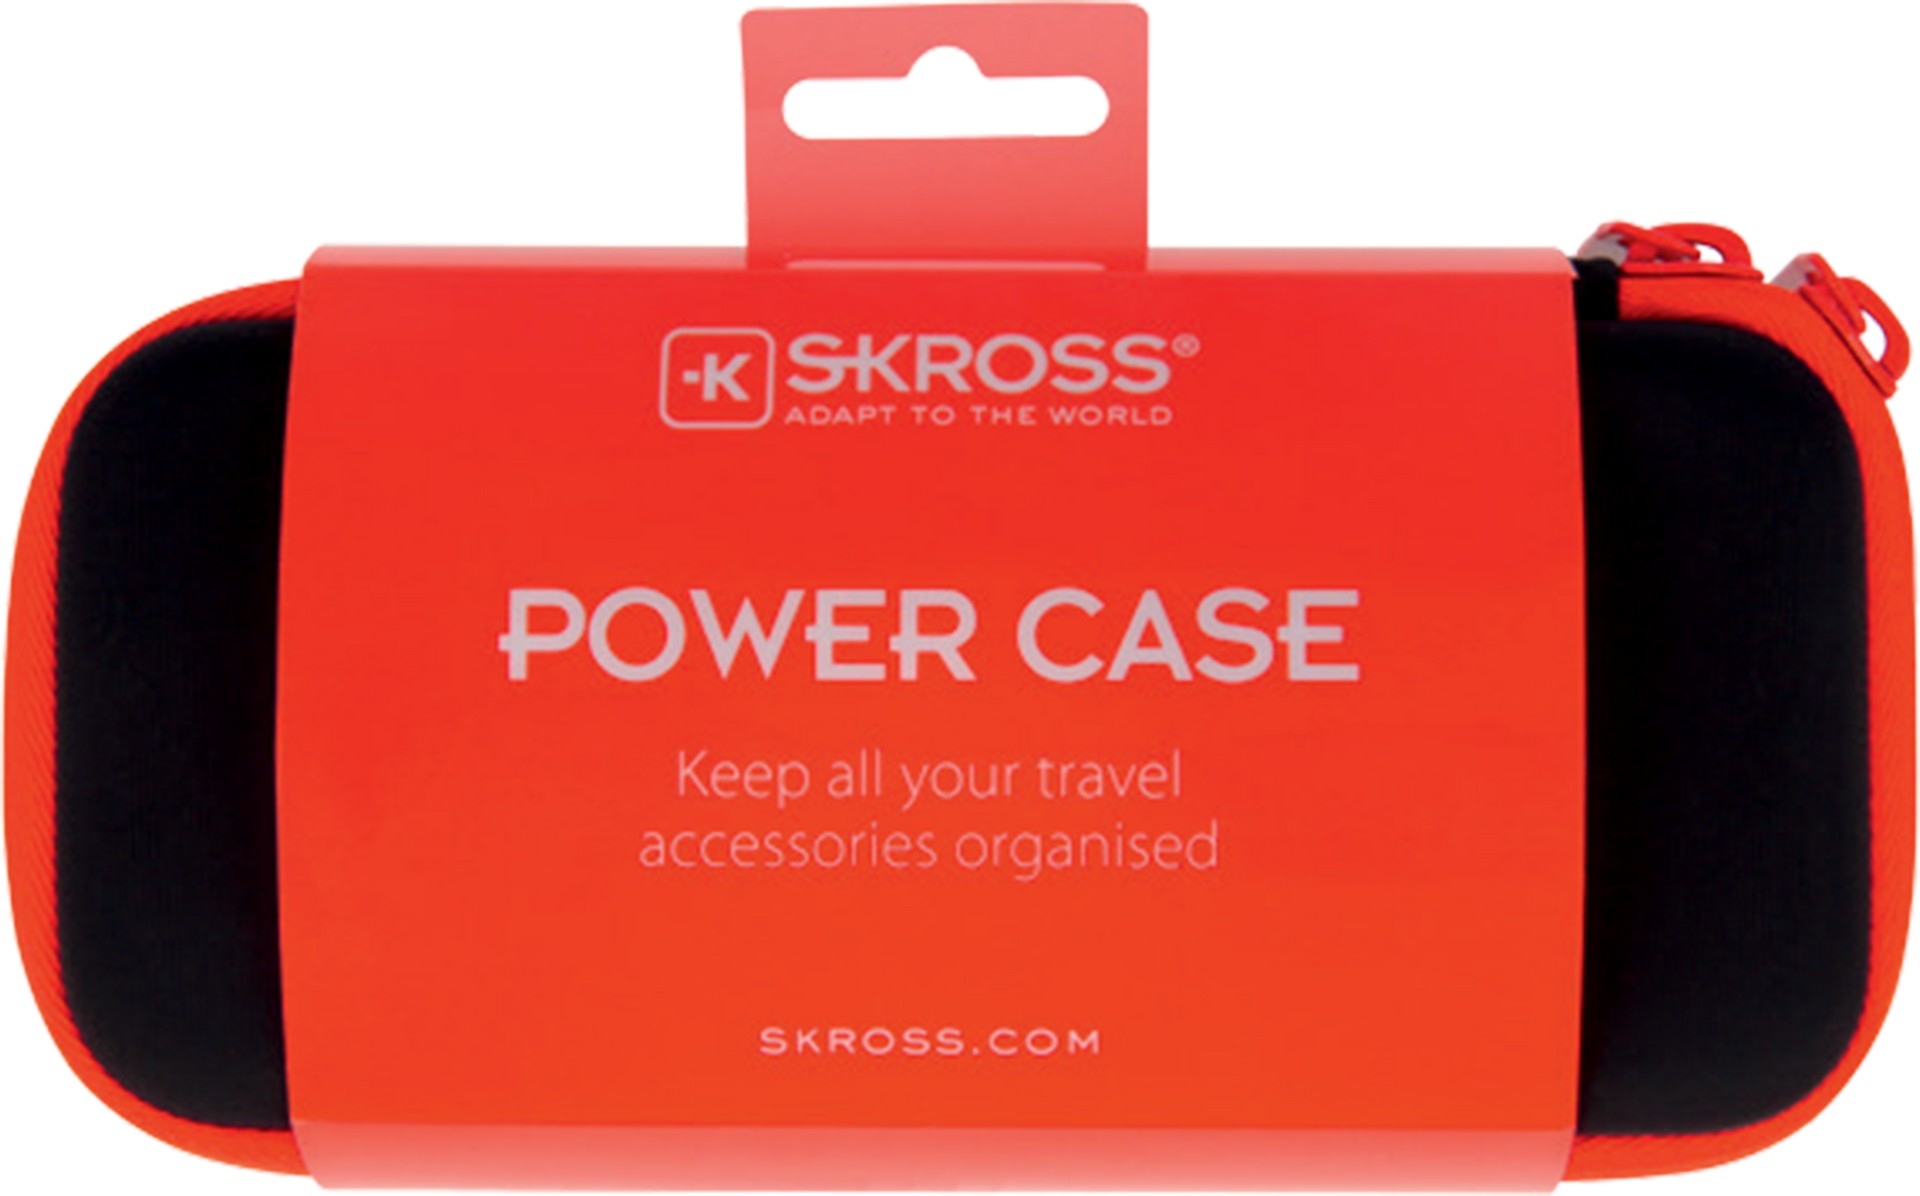 Skross Power Case Packaging